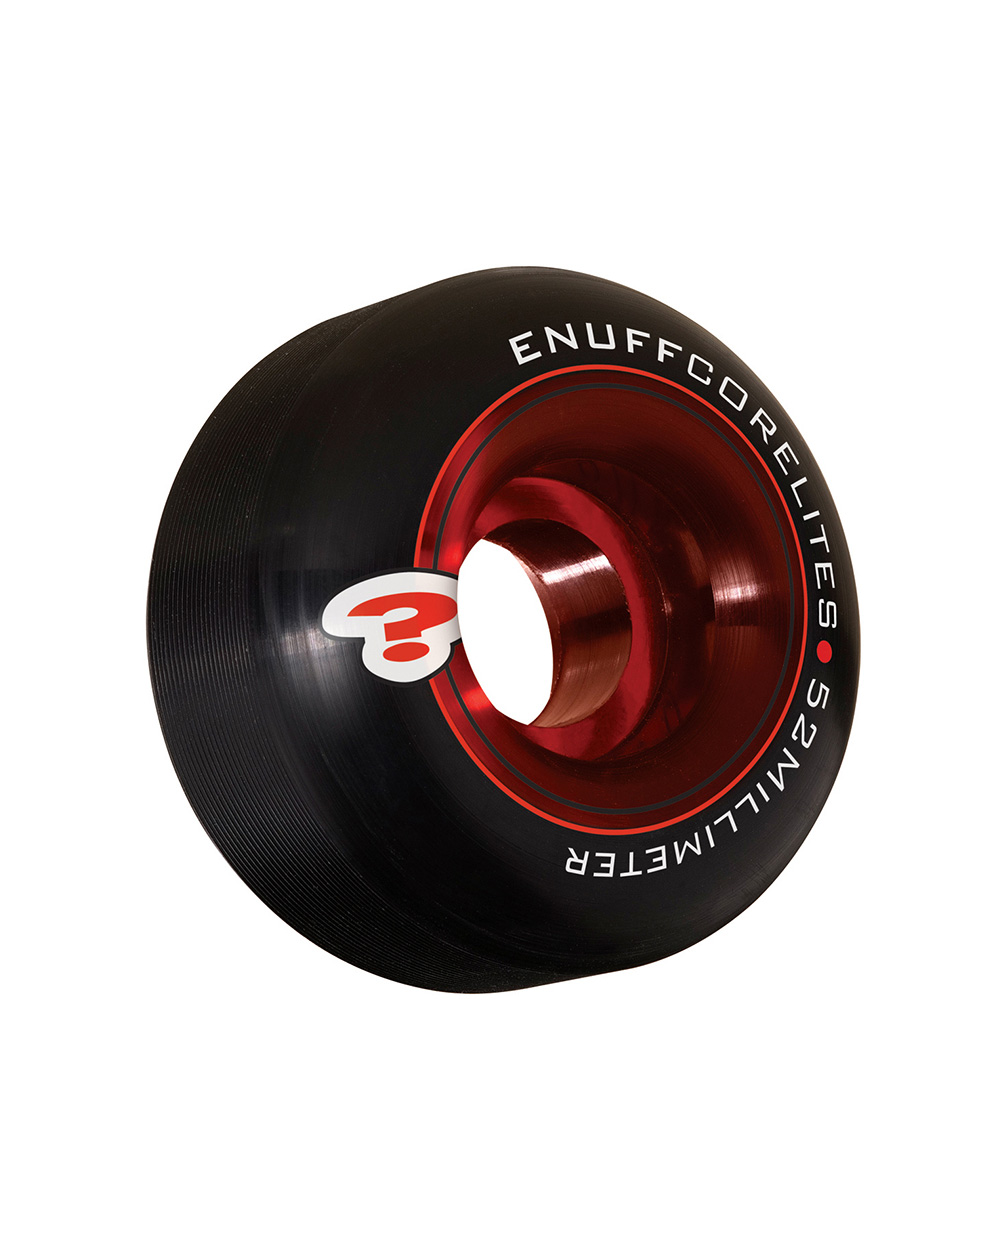 Enuff Corelites 52mm Skateboard Wheels Black/Red pack of 4